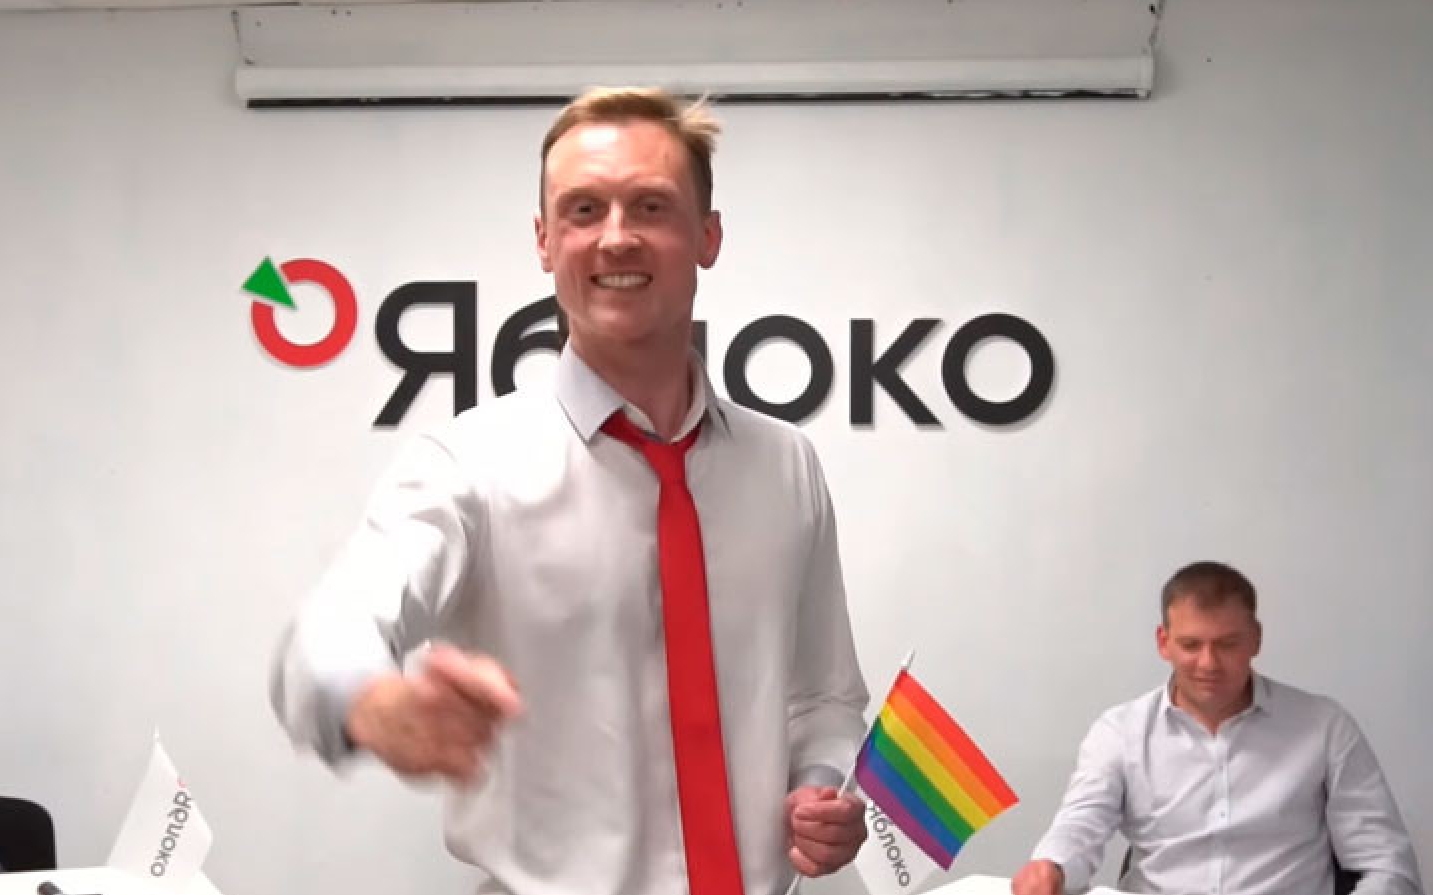 Сергій Трошин: «Так, я гей» [Відео]